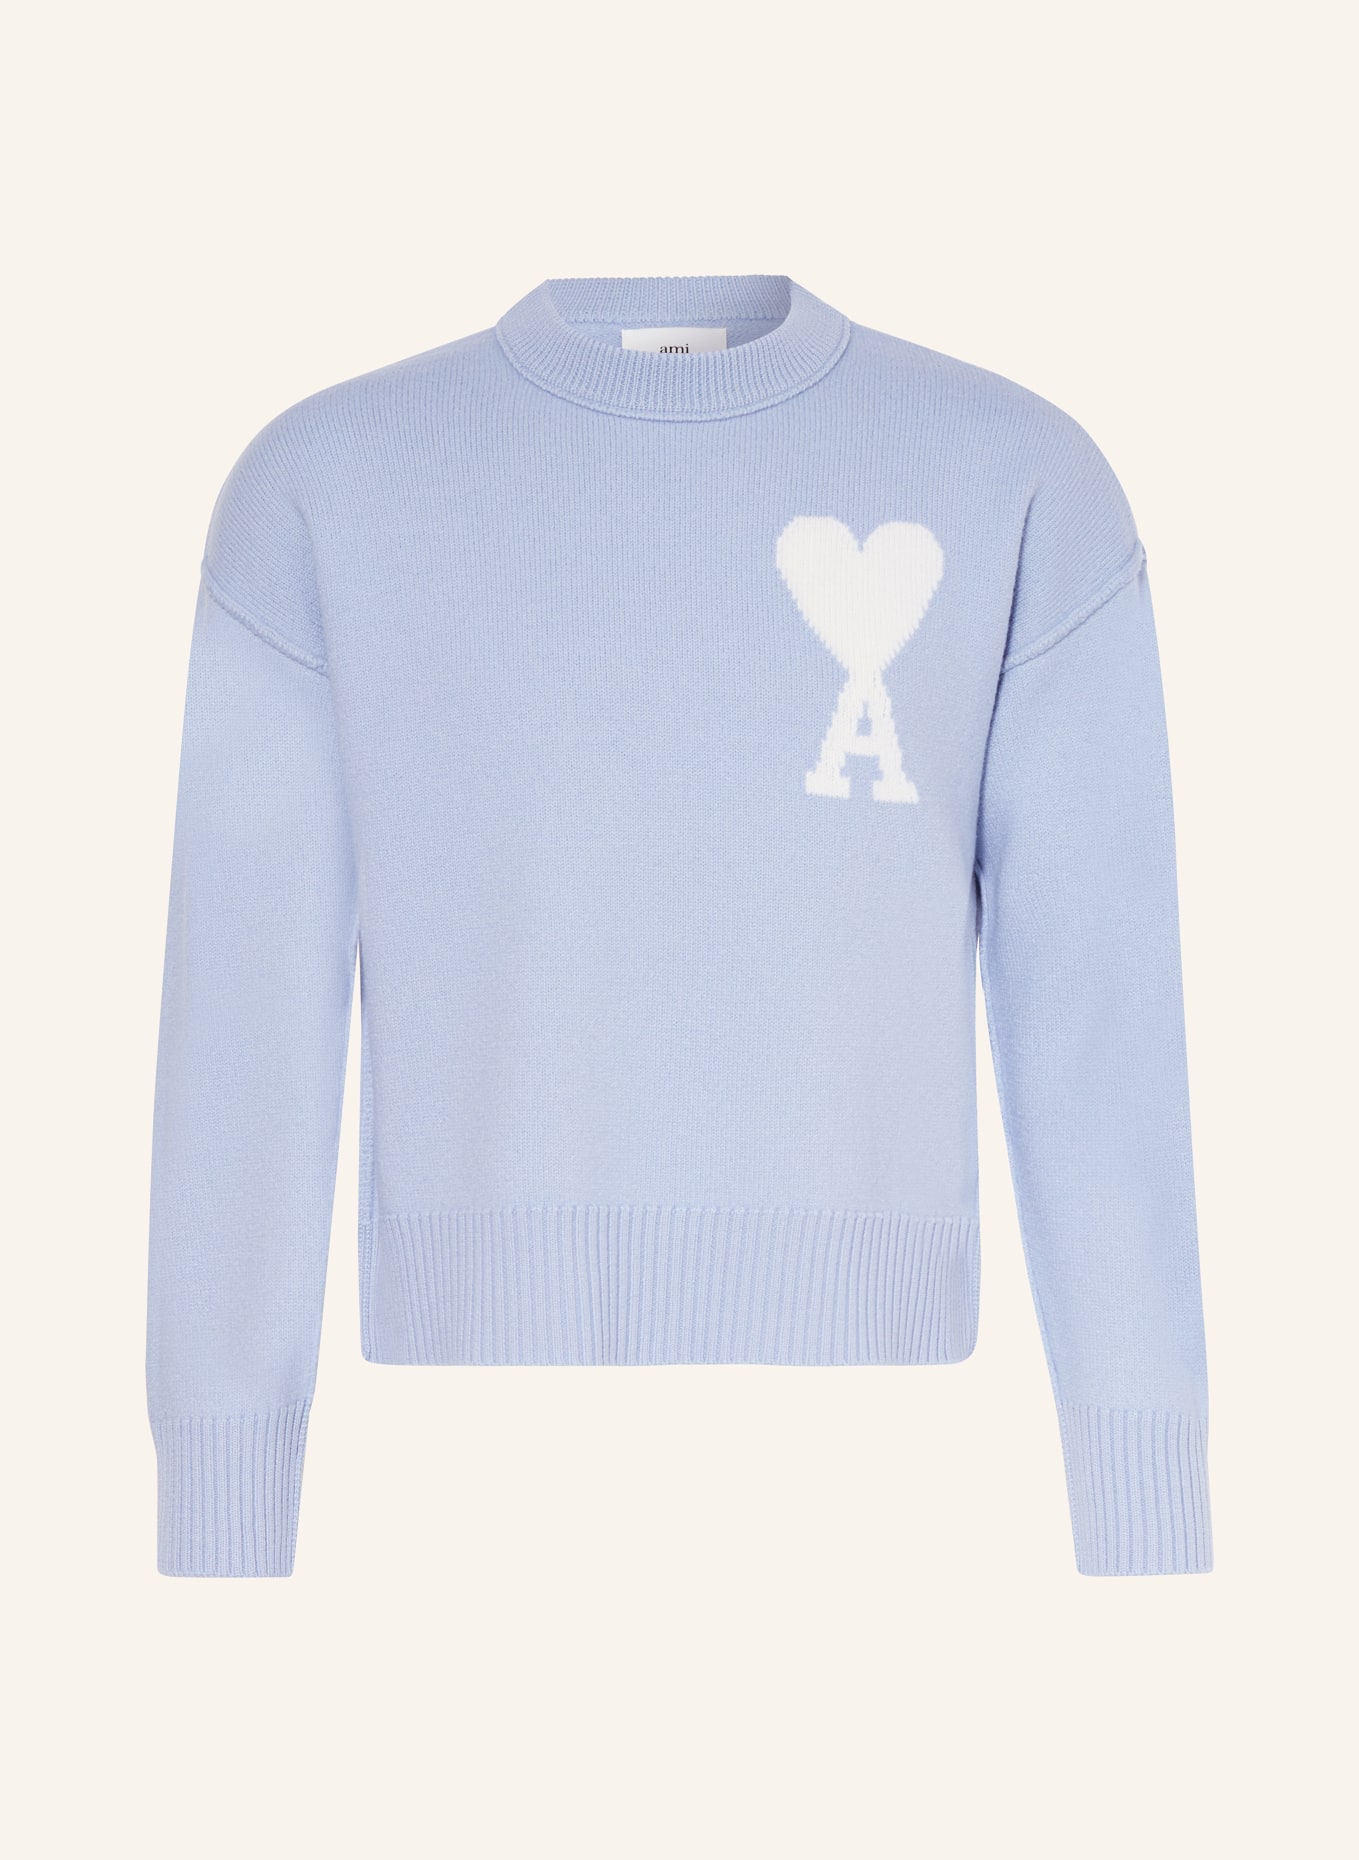 AMI PARIS Sweater, Color: LIGHT BLUE/ ECRU (Image 1)